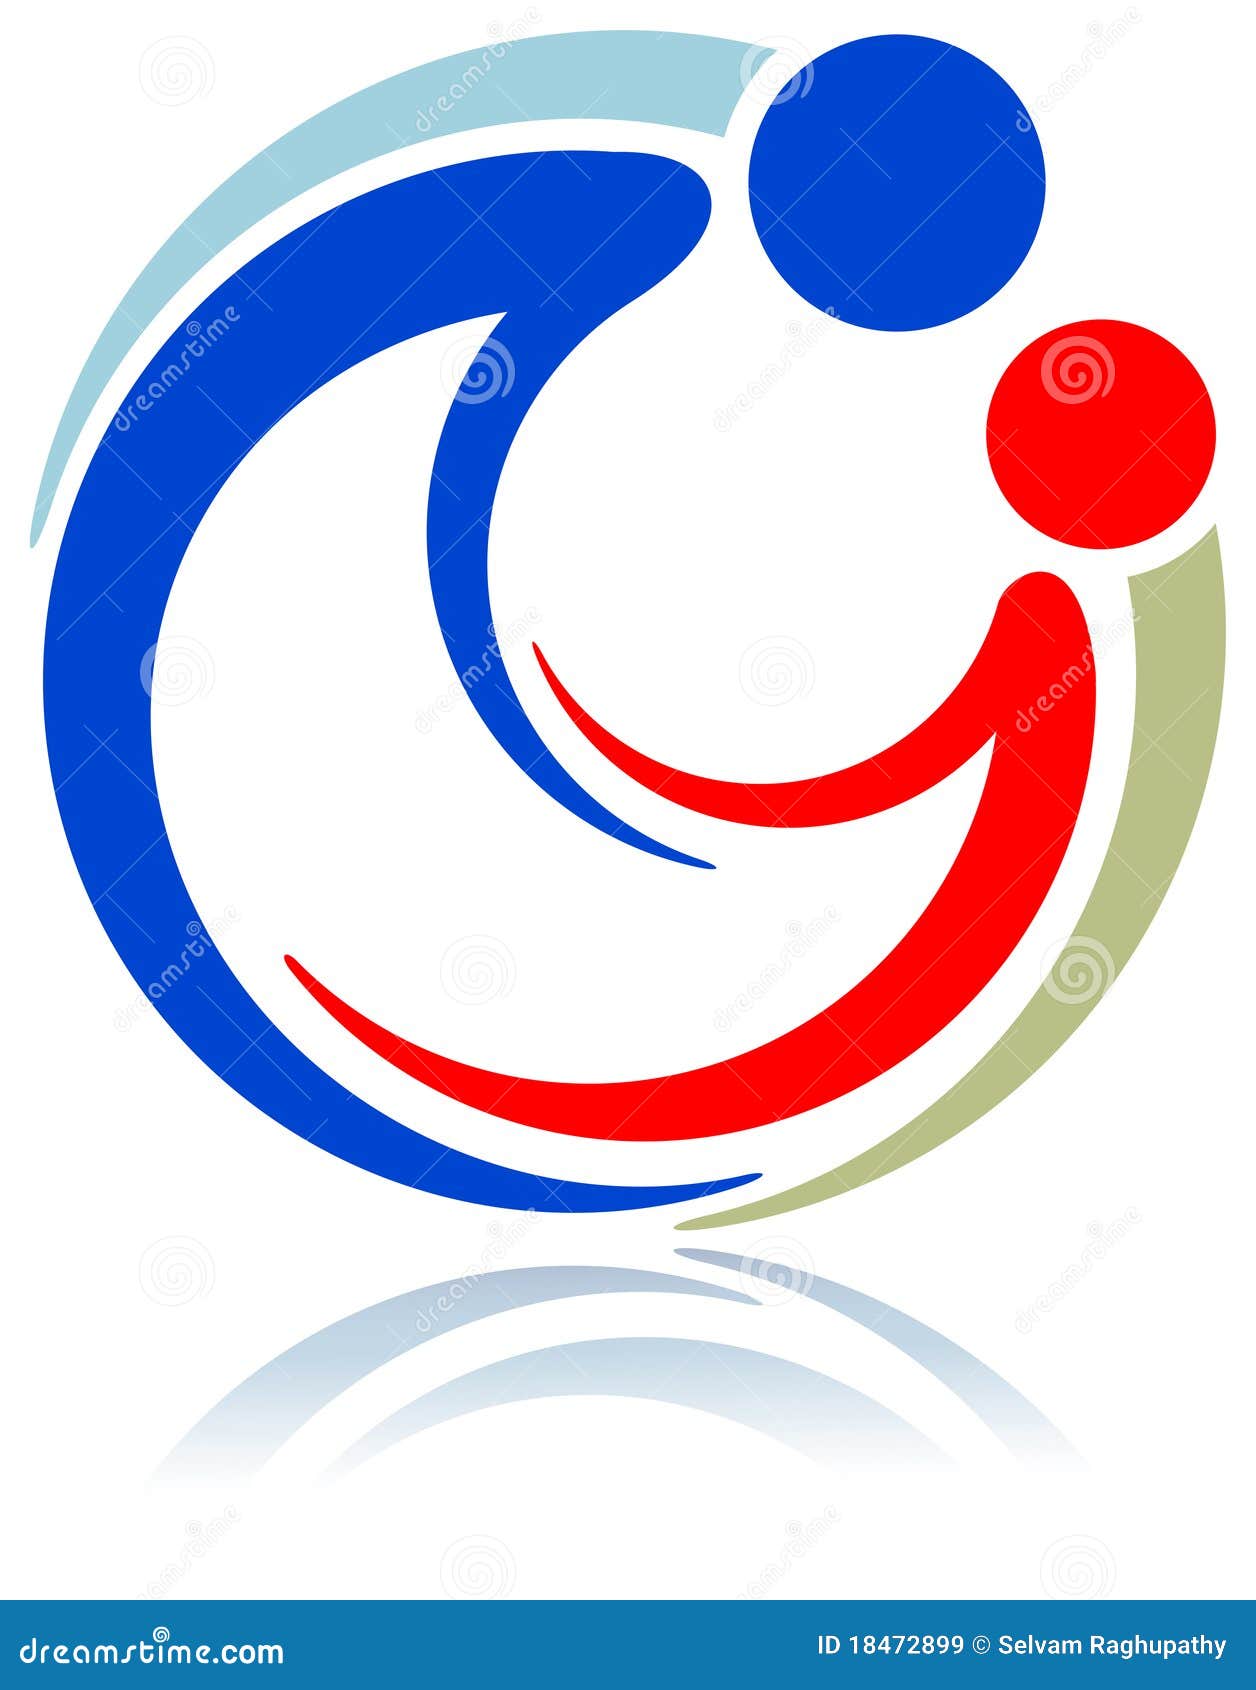 togetherness logo